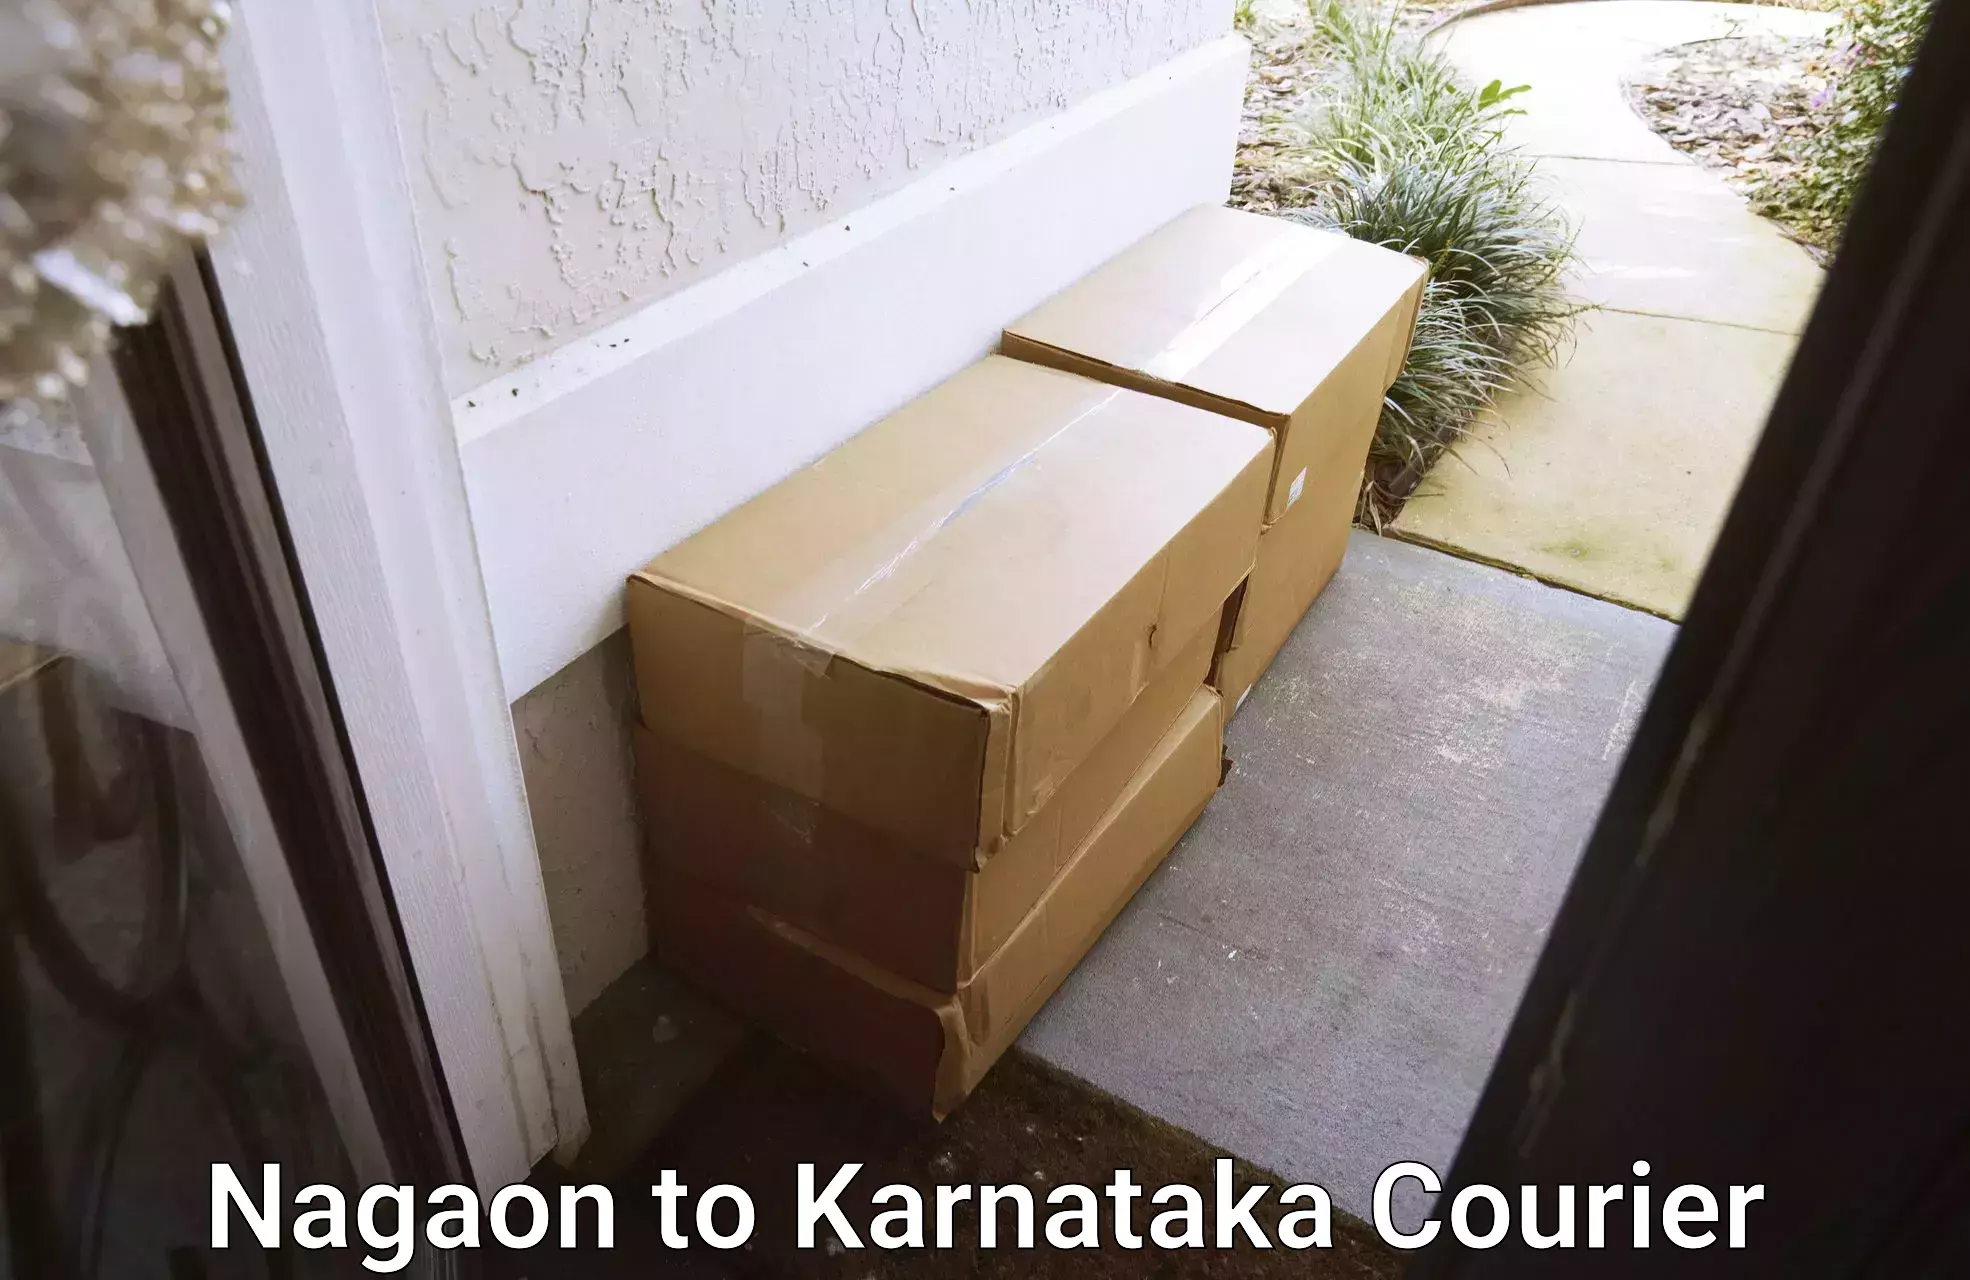 Quick parcel dispatch Nagaon to Karnataka